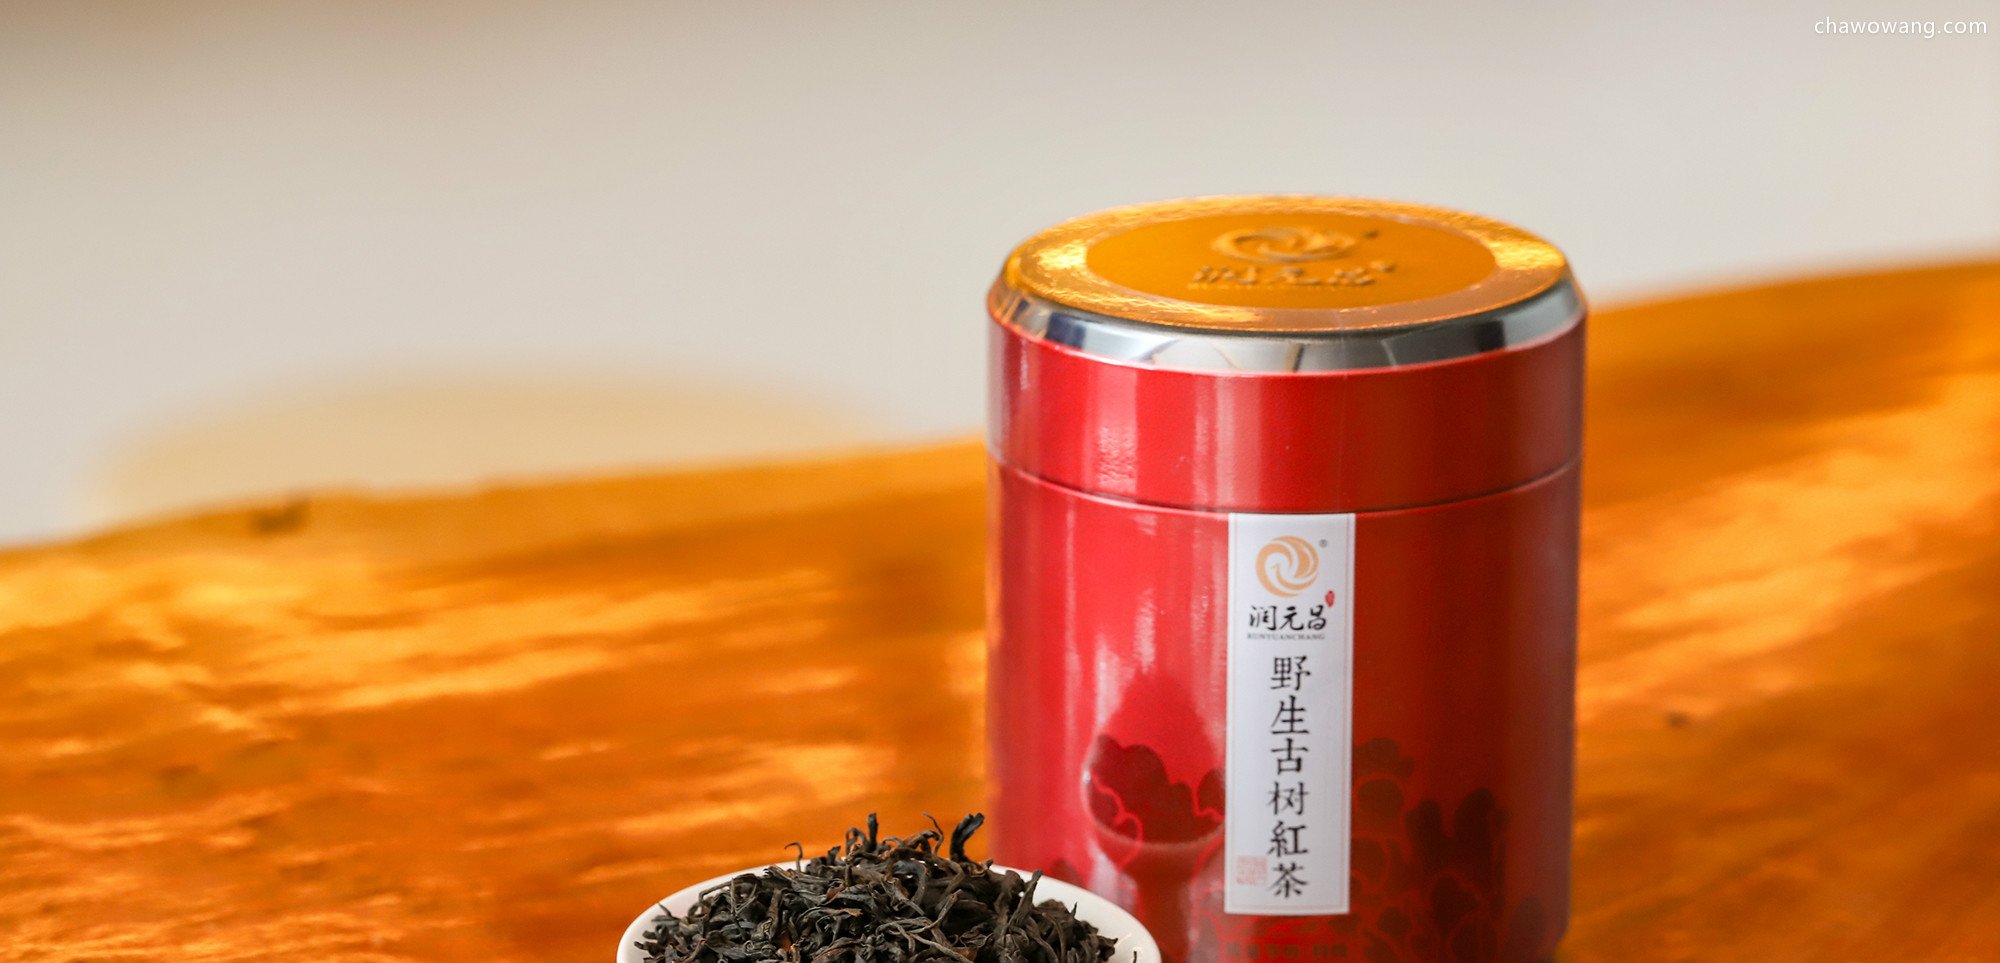 锡兰红茶产自哪里 锡兰红茶产地介绍